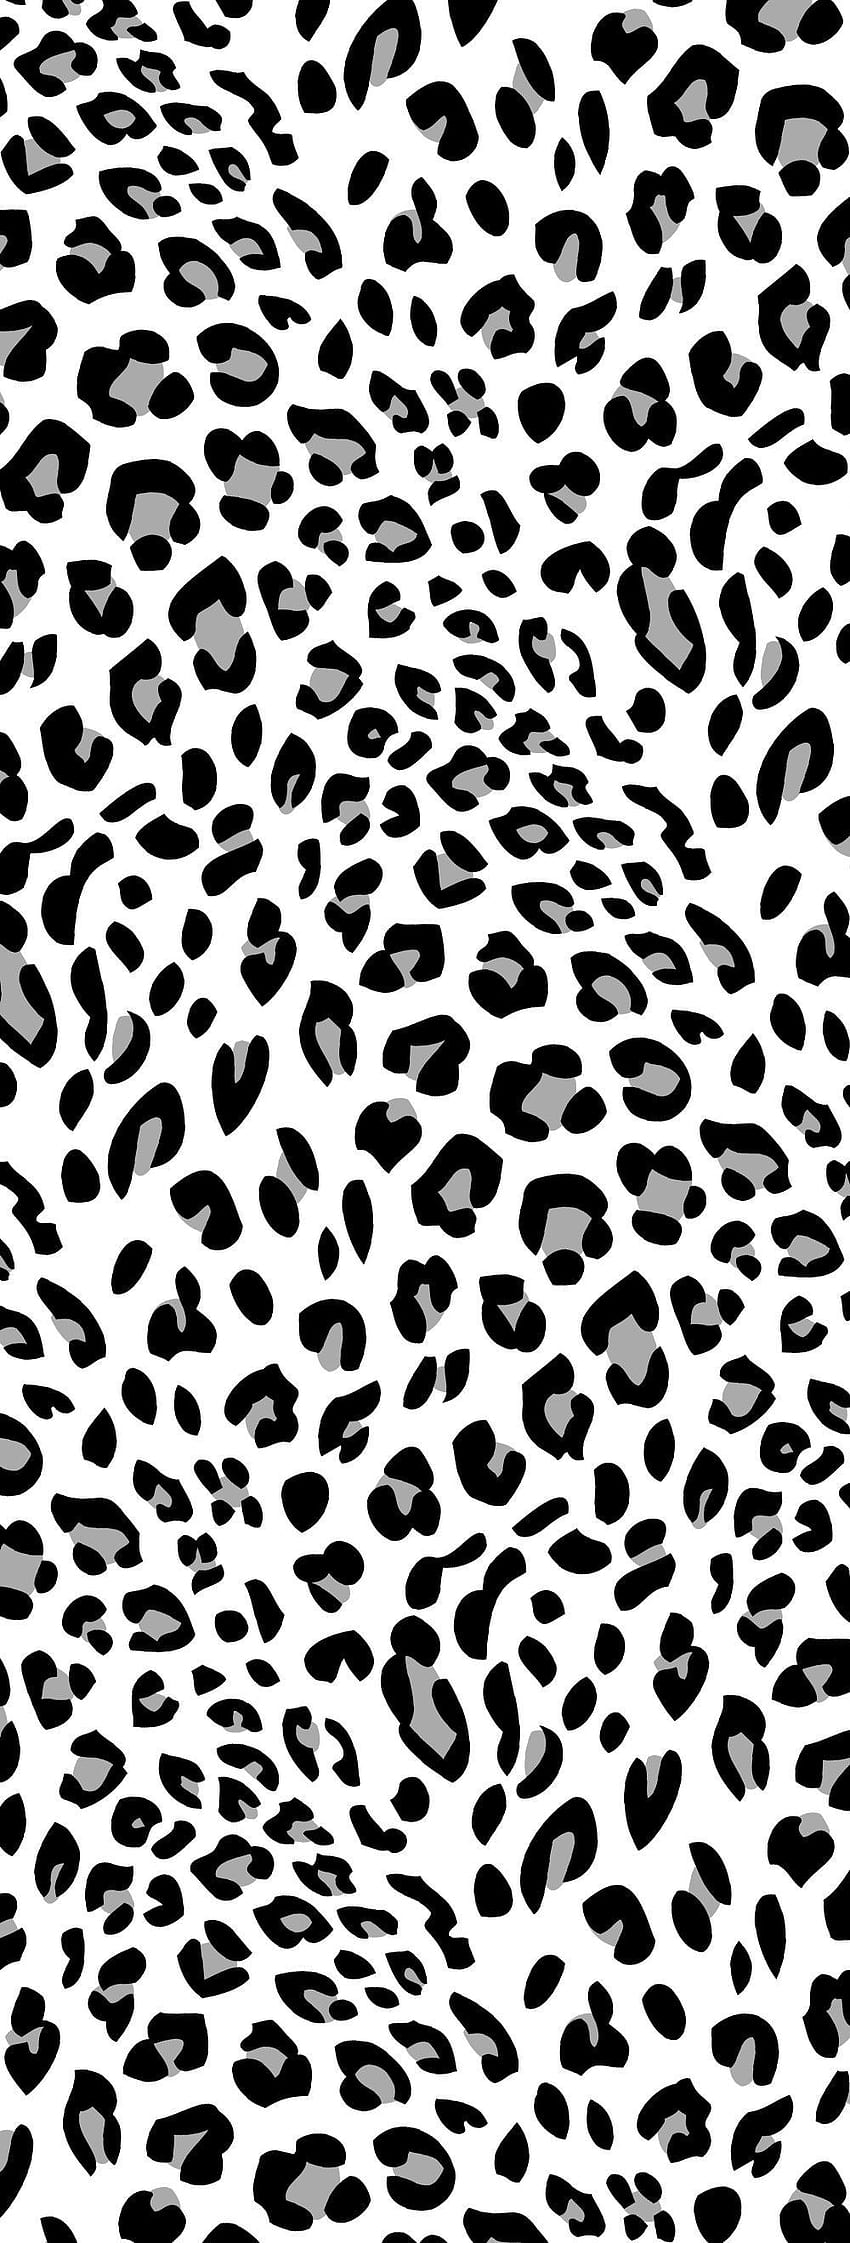 Leopard HD phone wallpaper | Pxfuel